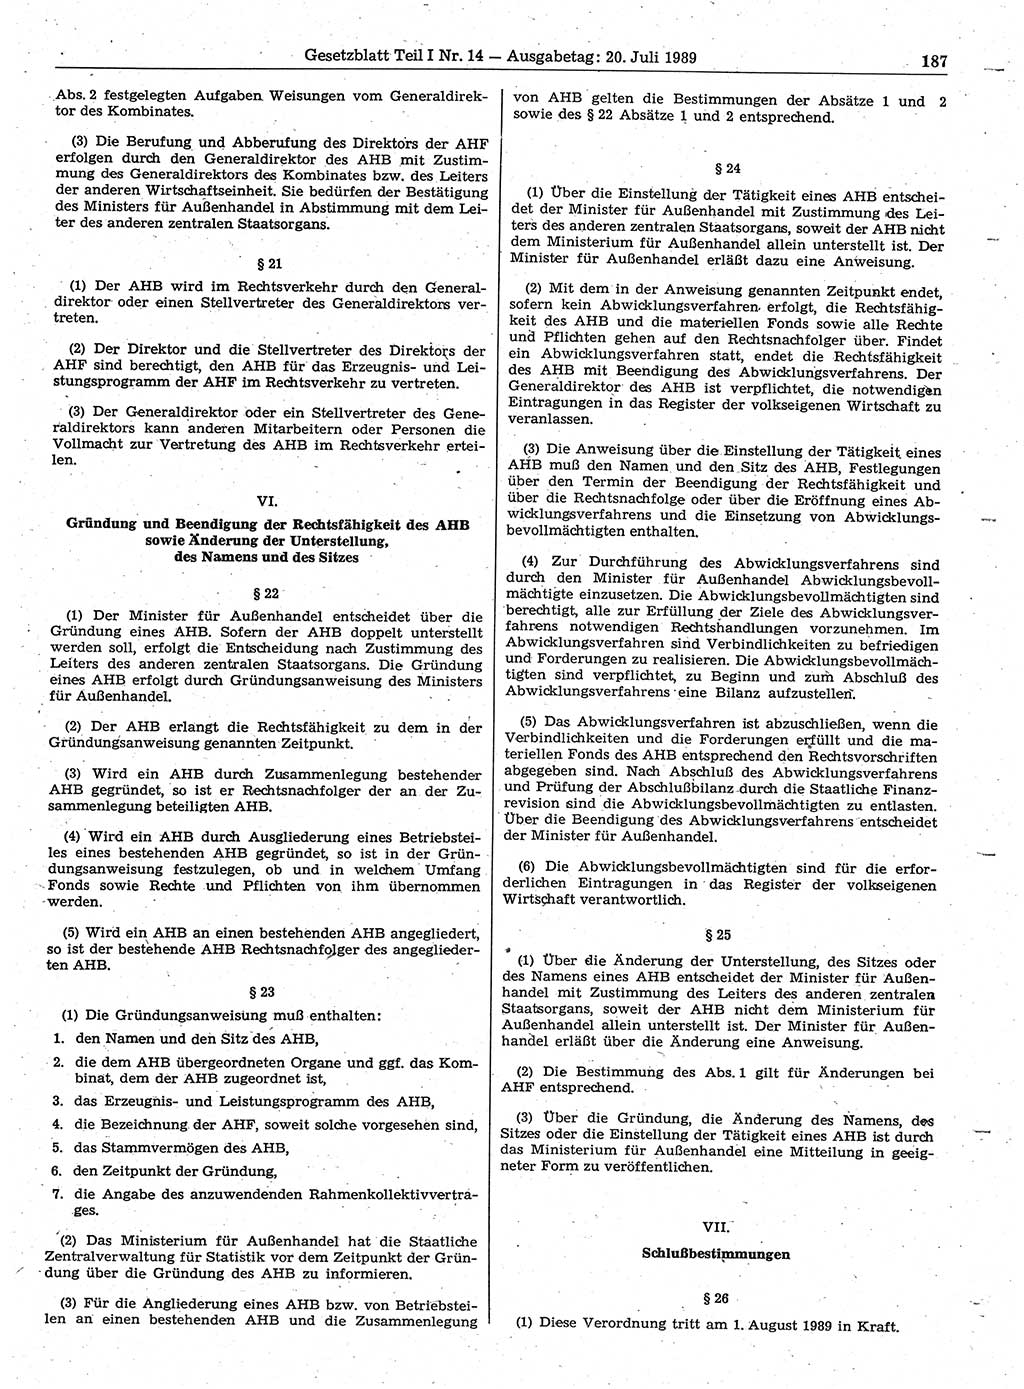 Gesetzblatt (GBl.) der Deutschen Demokratischen Republik (DDR) Teil Ⅰ 1989, Seite 187 (GBl. DDR Ⅰ 1989, S. 187)